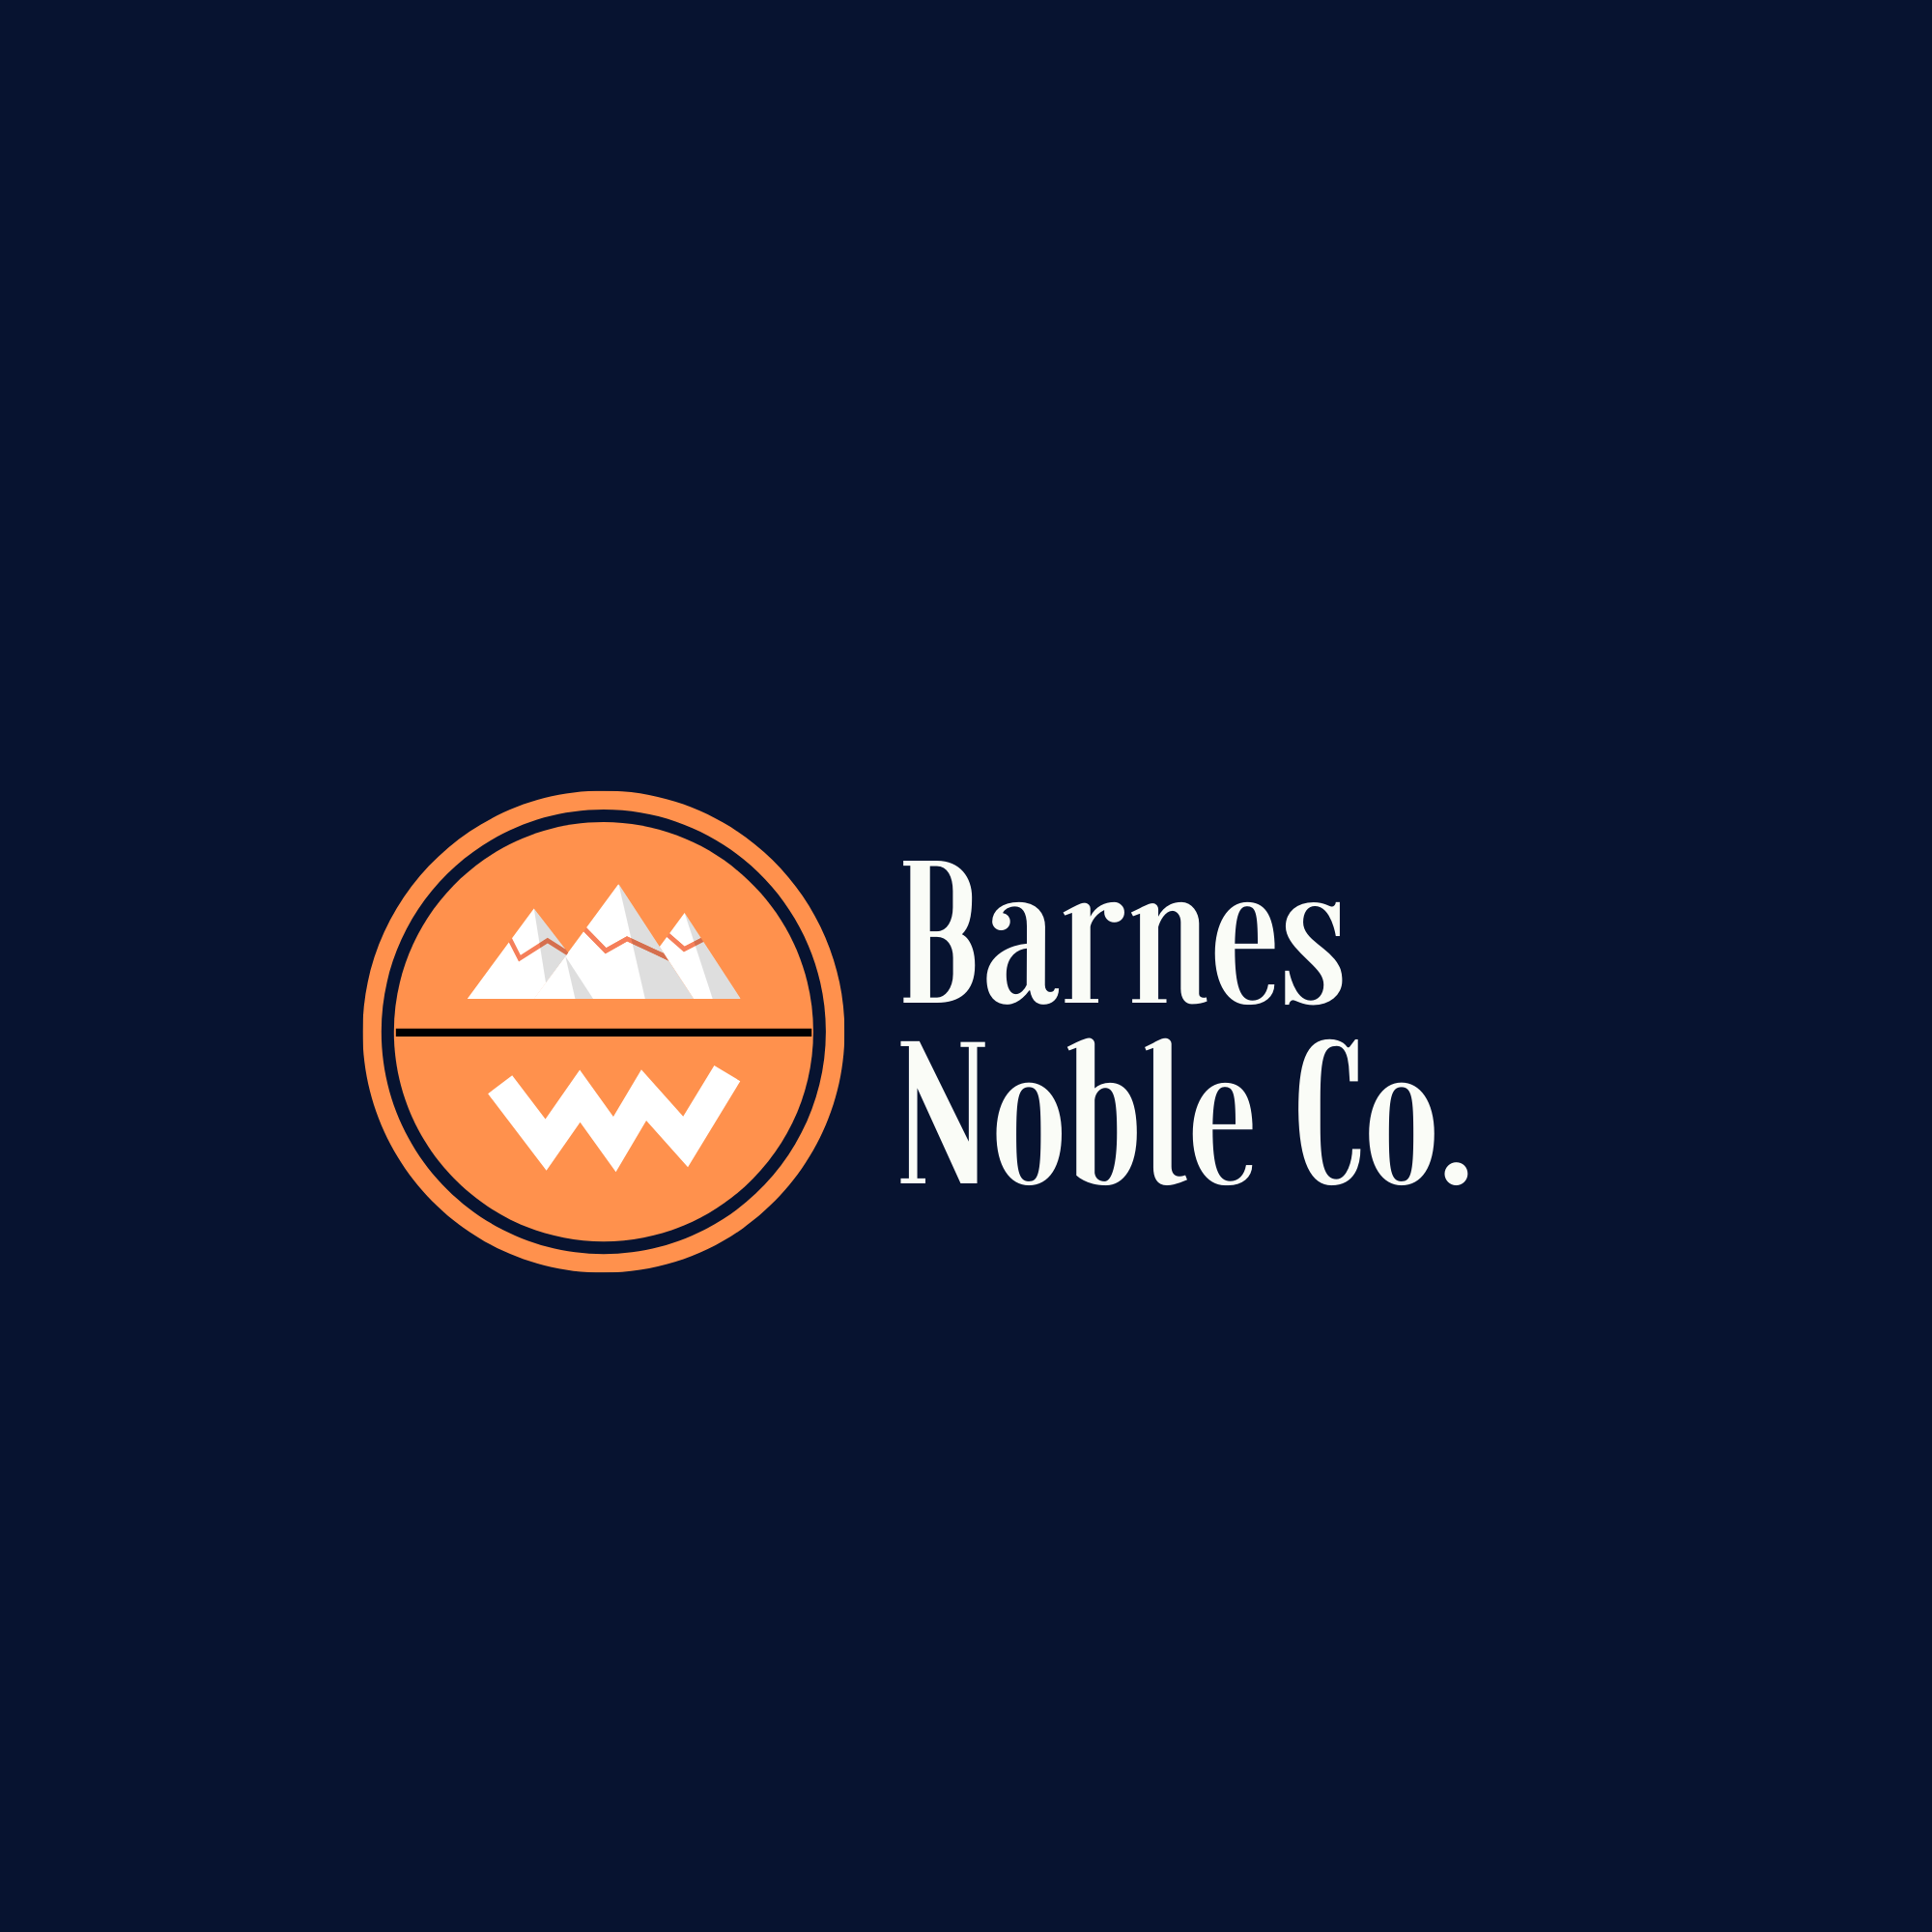 Barnes Noble Co